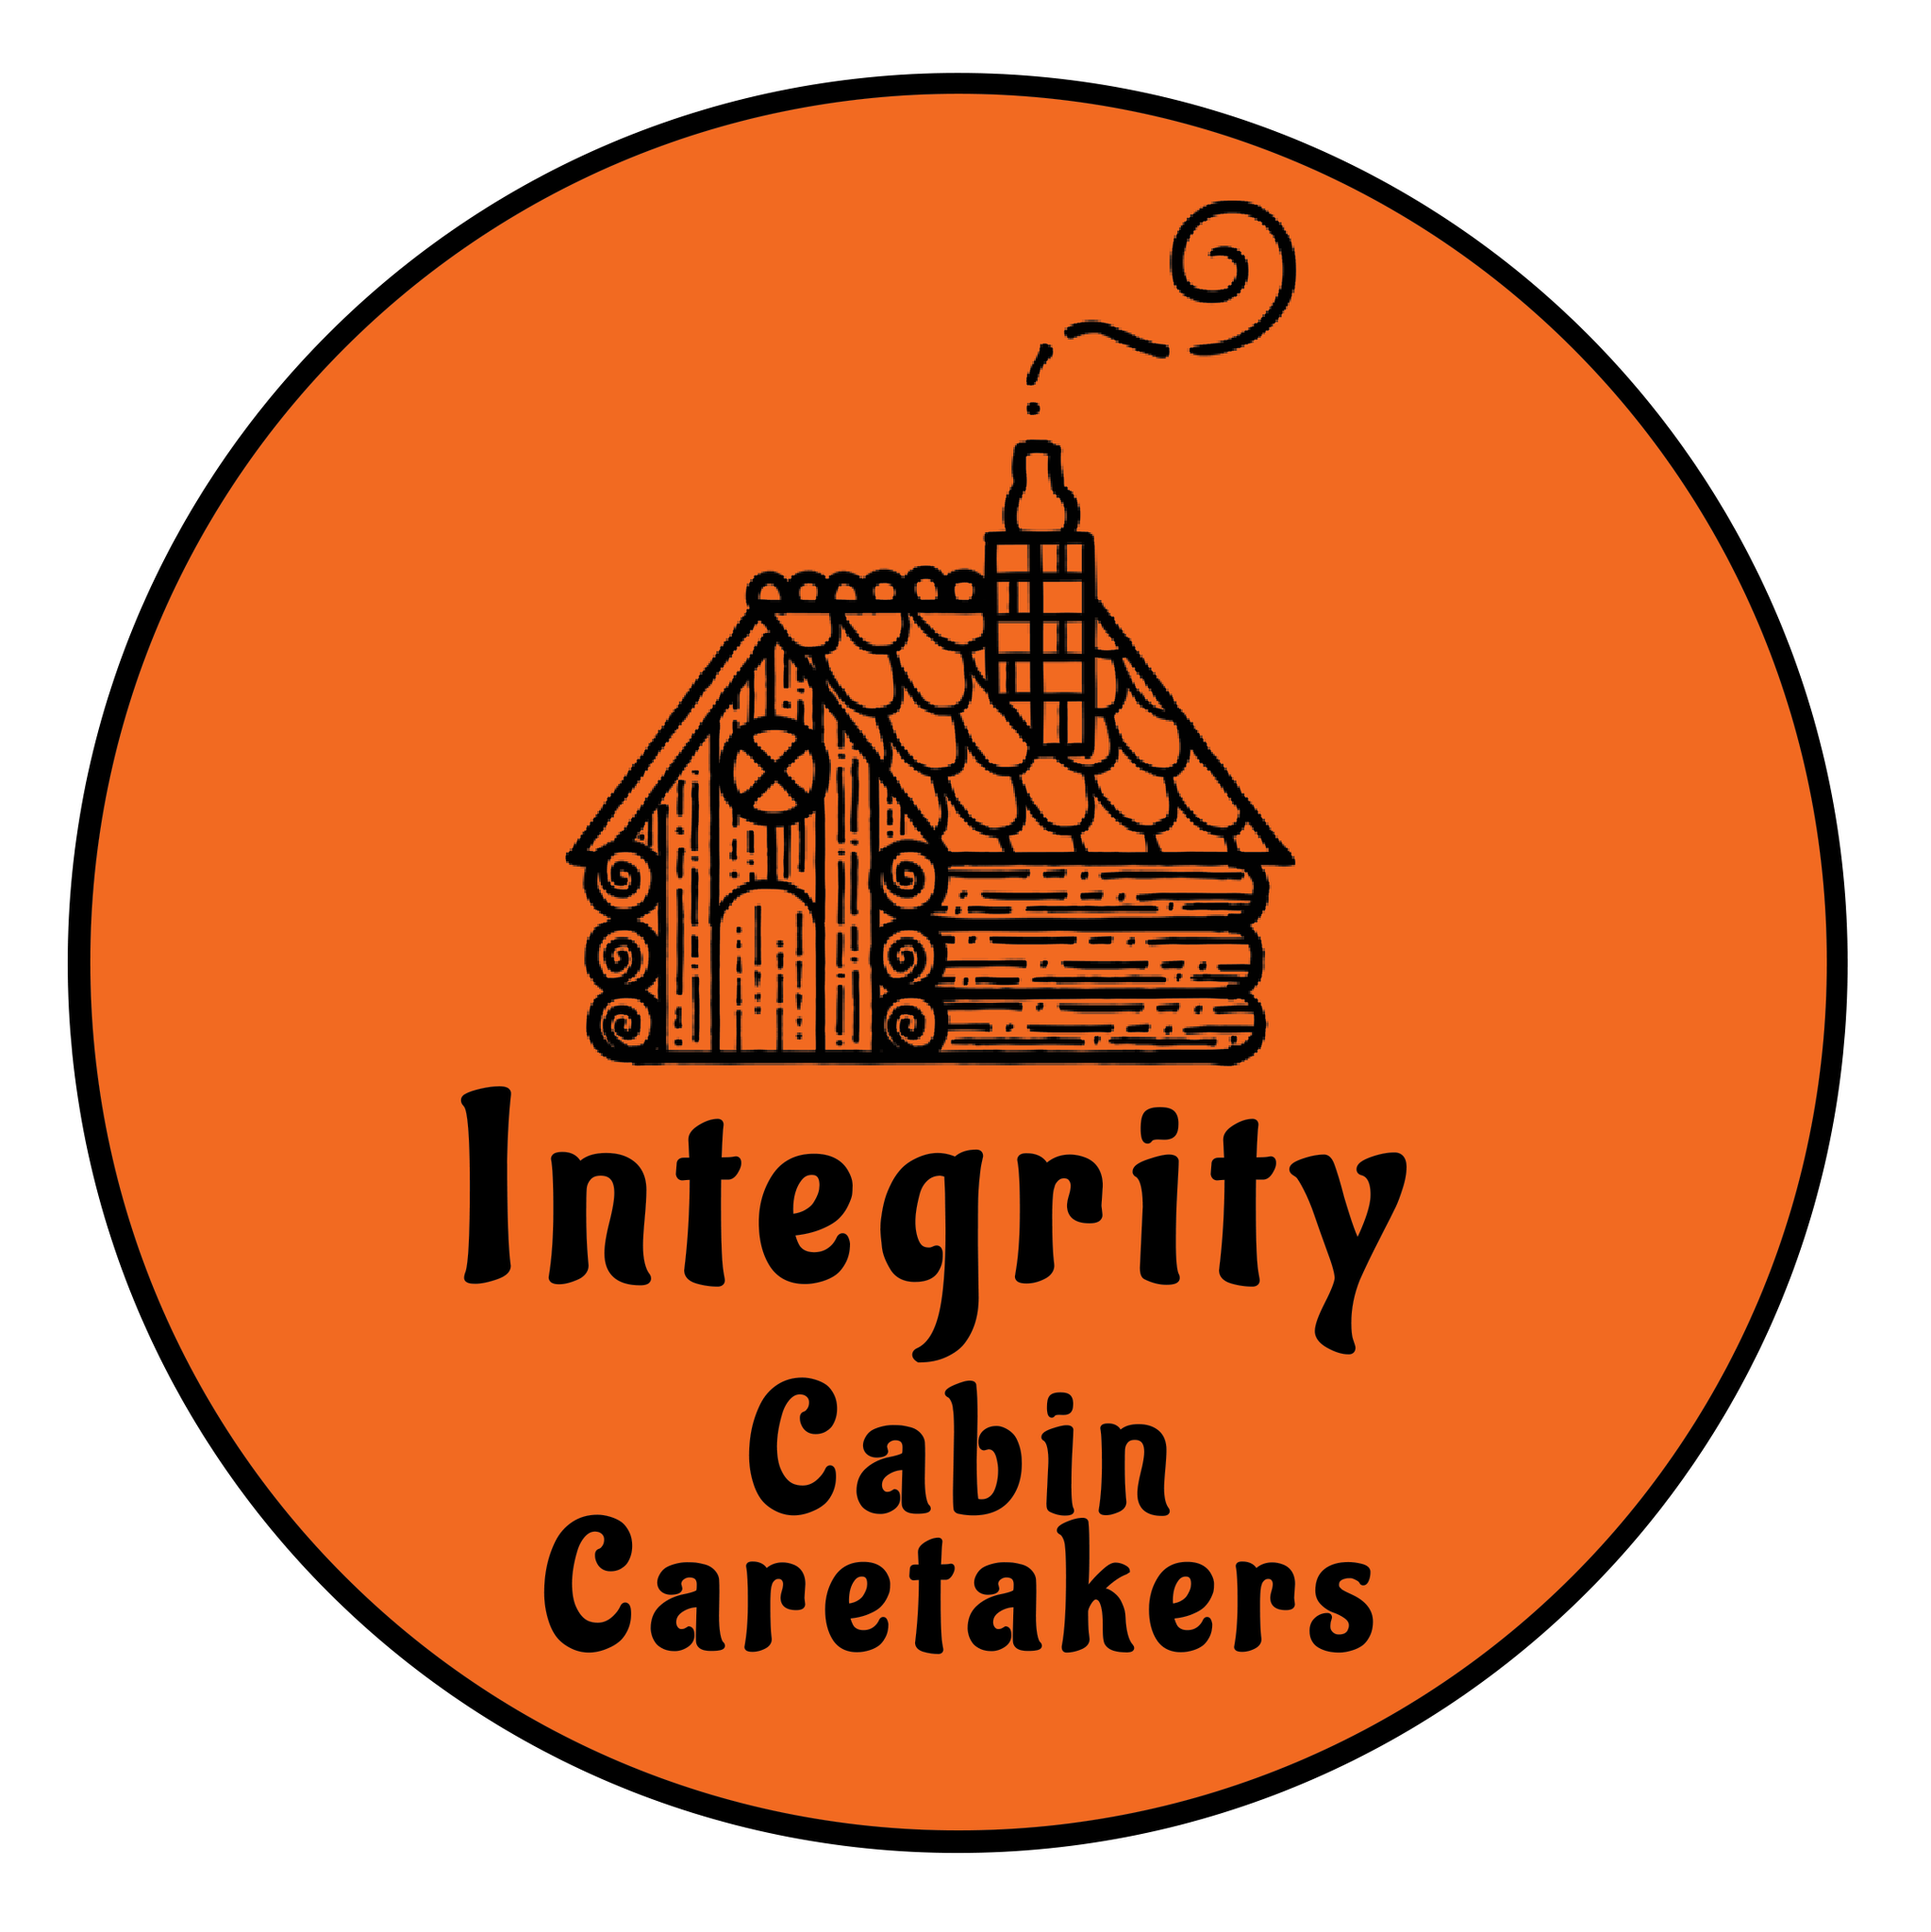 Integrity Cabin Caretakers